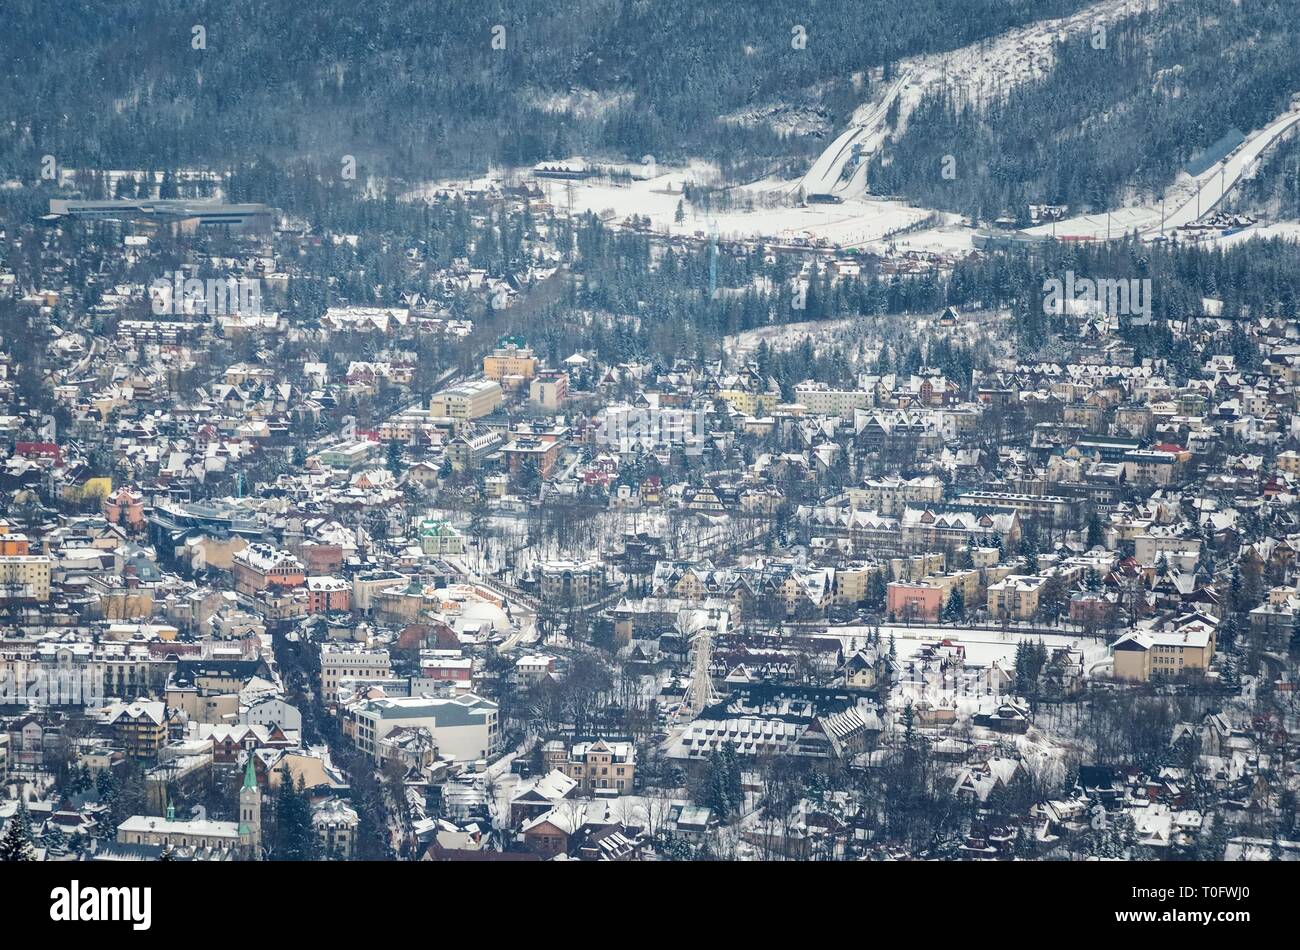 ZAKOPANE, POLAND - DECEMBER 30, 2018: View of the tourist town of Zakopane from the Gubalowka peak. Stock Photo